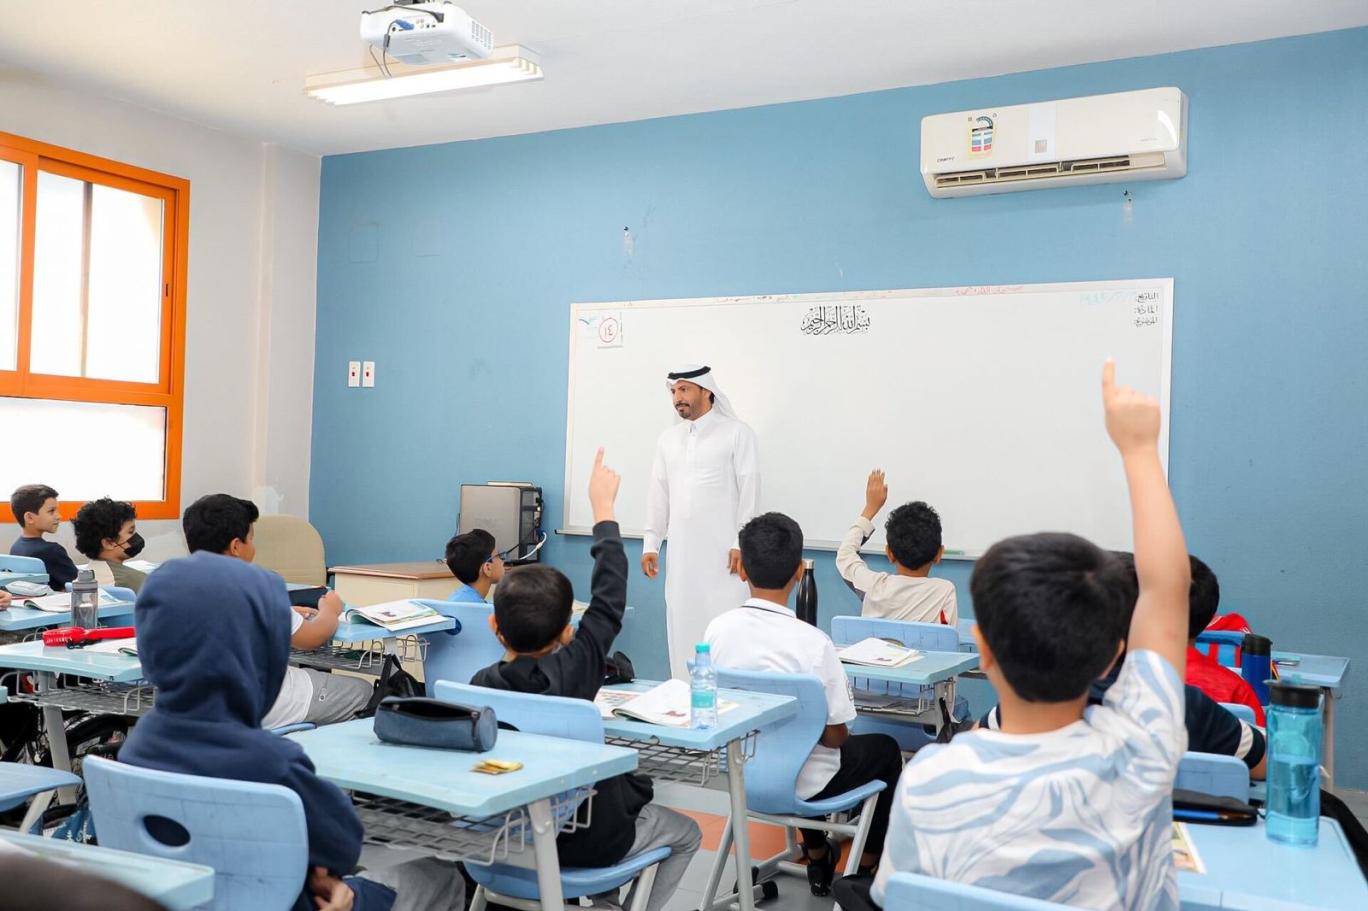 الحد الأدنى للأيام الدراسية في المدارس السعودية بالخارج 